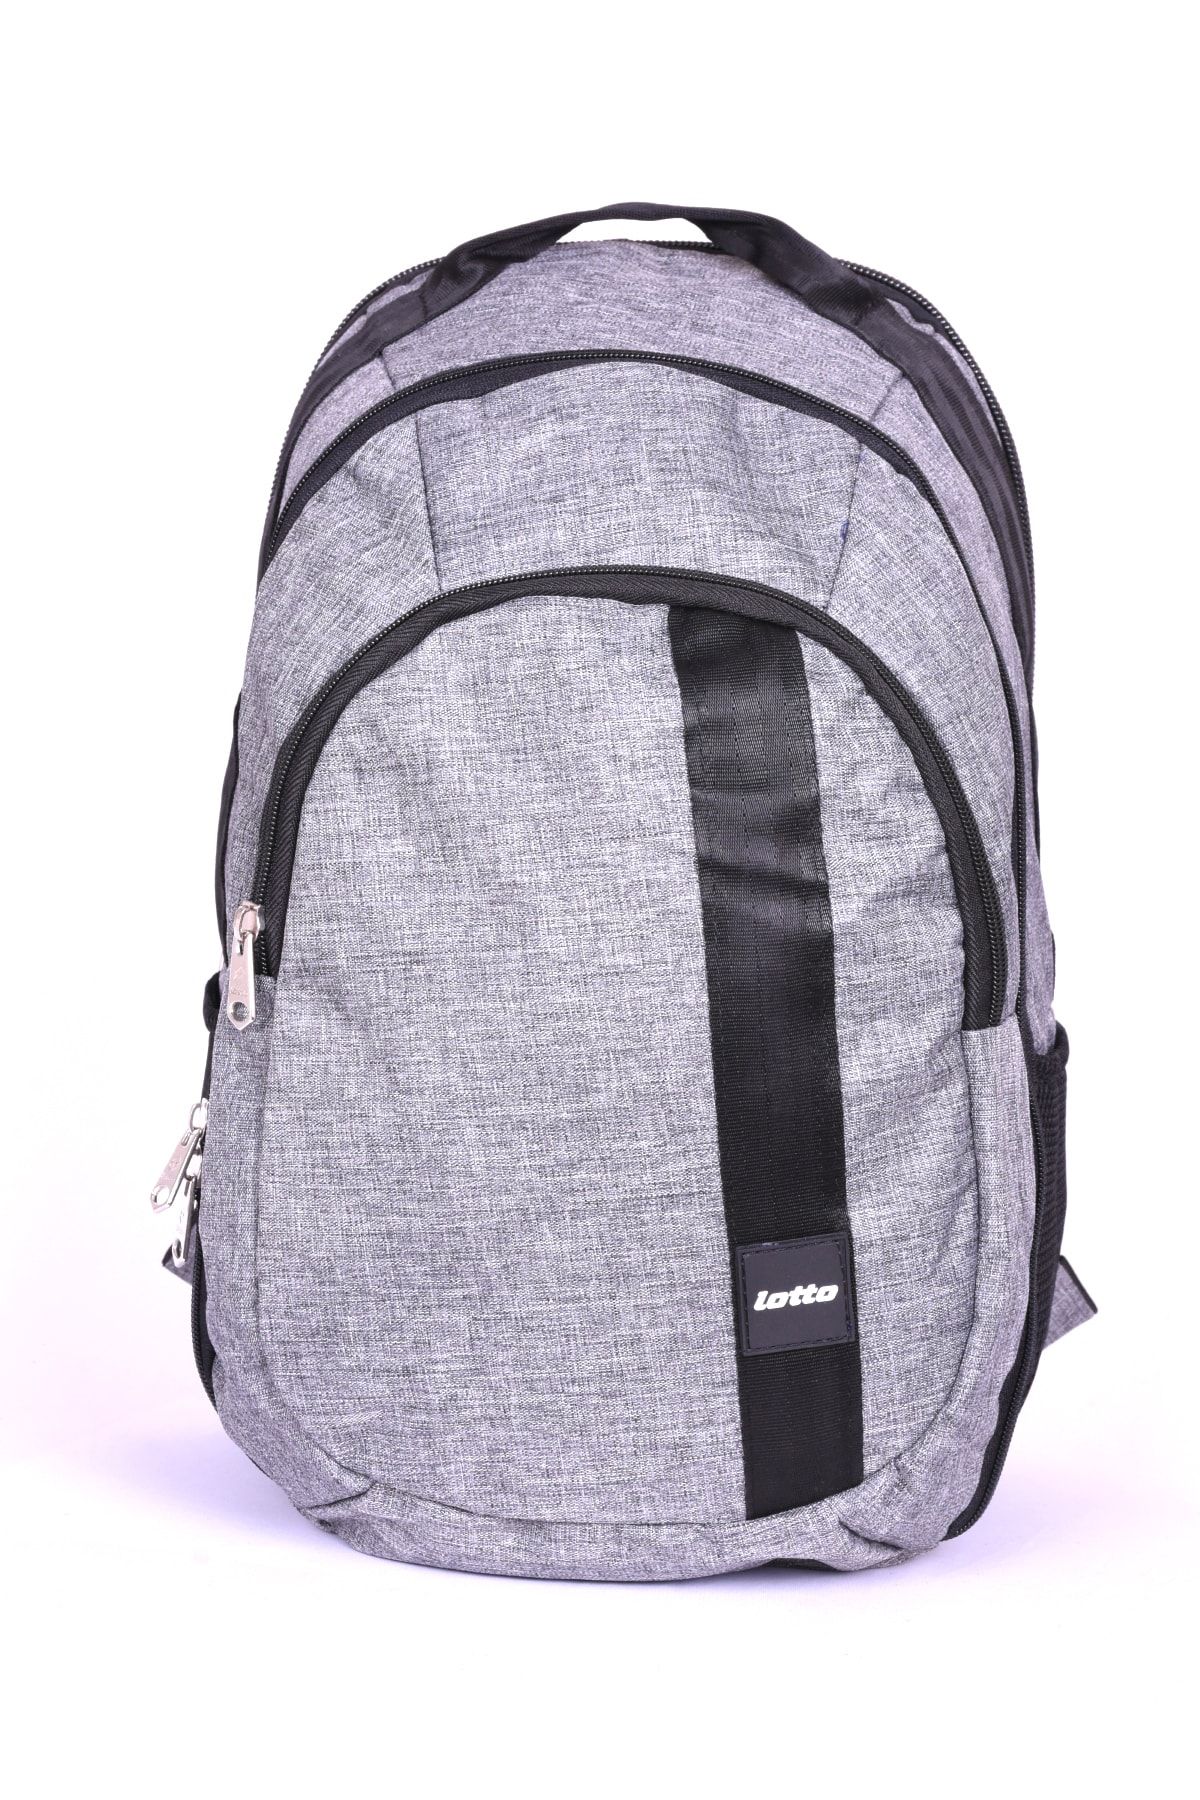 Lotto Unisex Sırt Çantası - Best Backpack - R2121